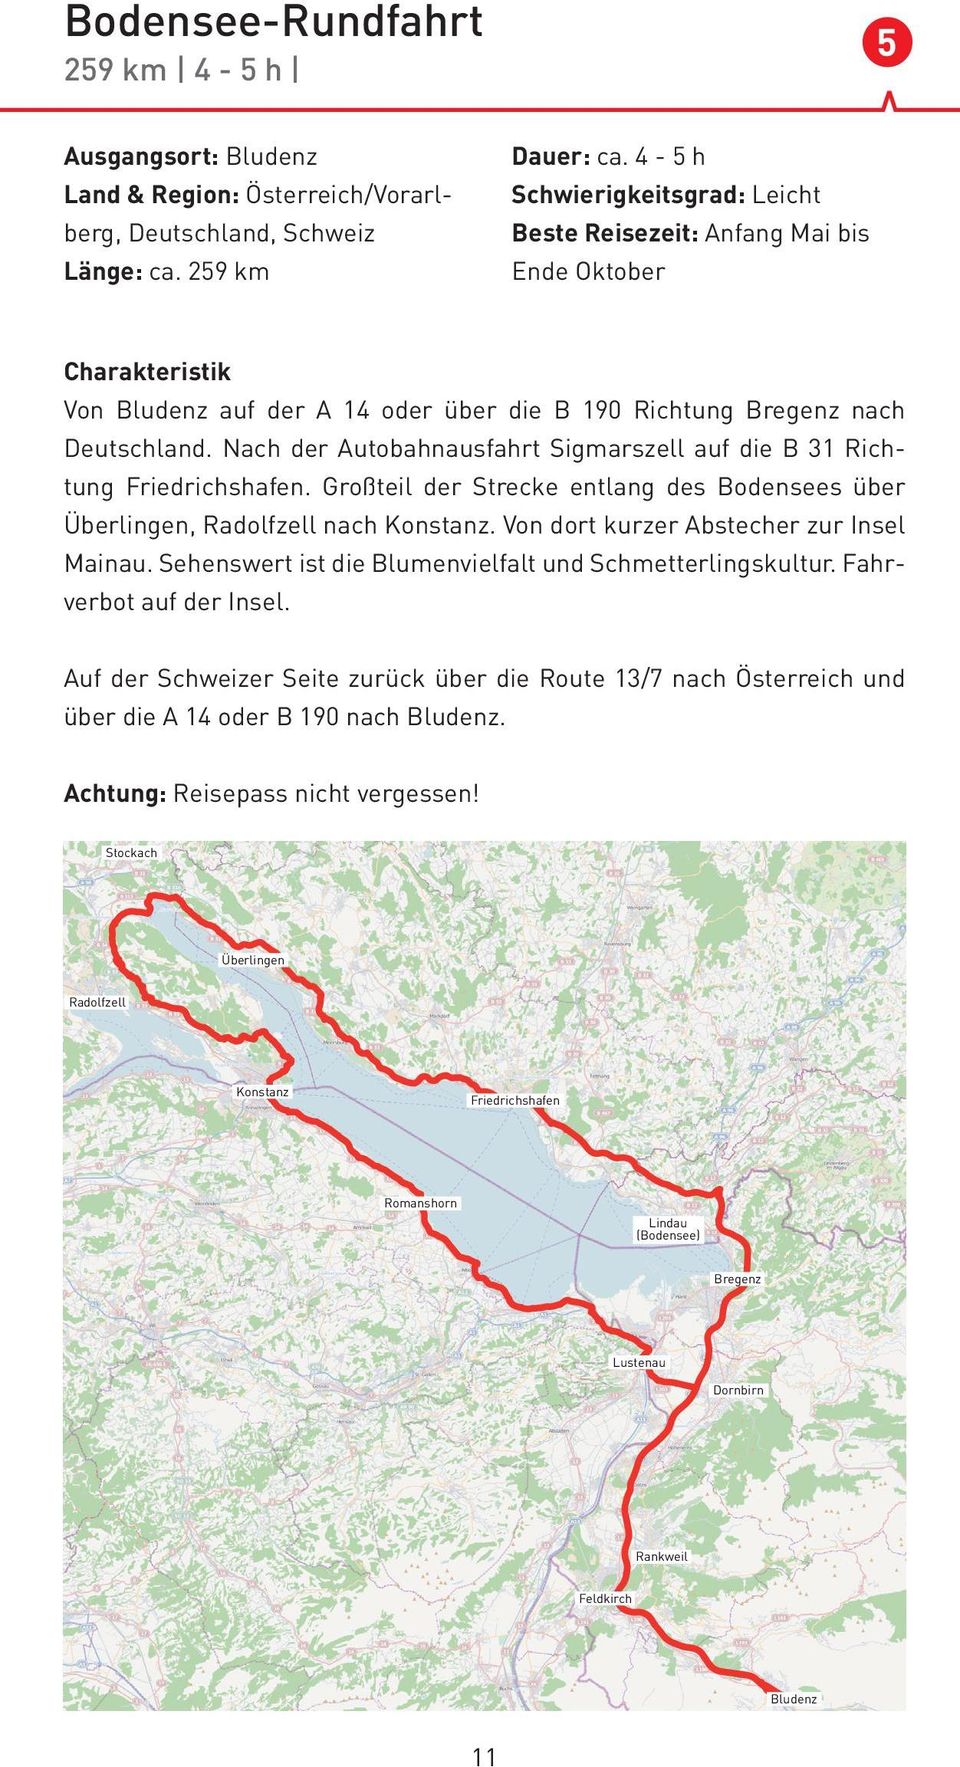 Nach der Autobahnausfahrt Sigmarszell auf die B 31 Richtung Friedrichshafen. Großteil der Strecke entlang des Bodensees über Überlingen, Radolfzell nach Konstanz.